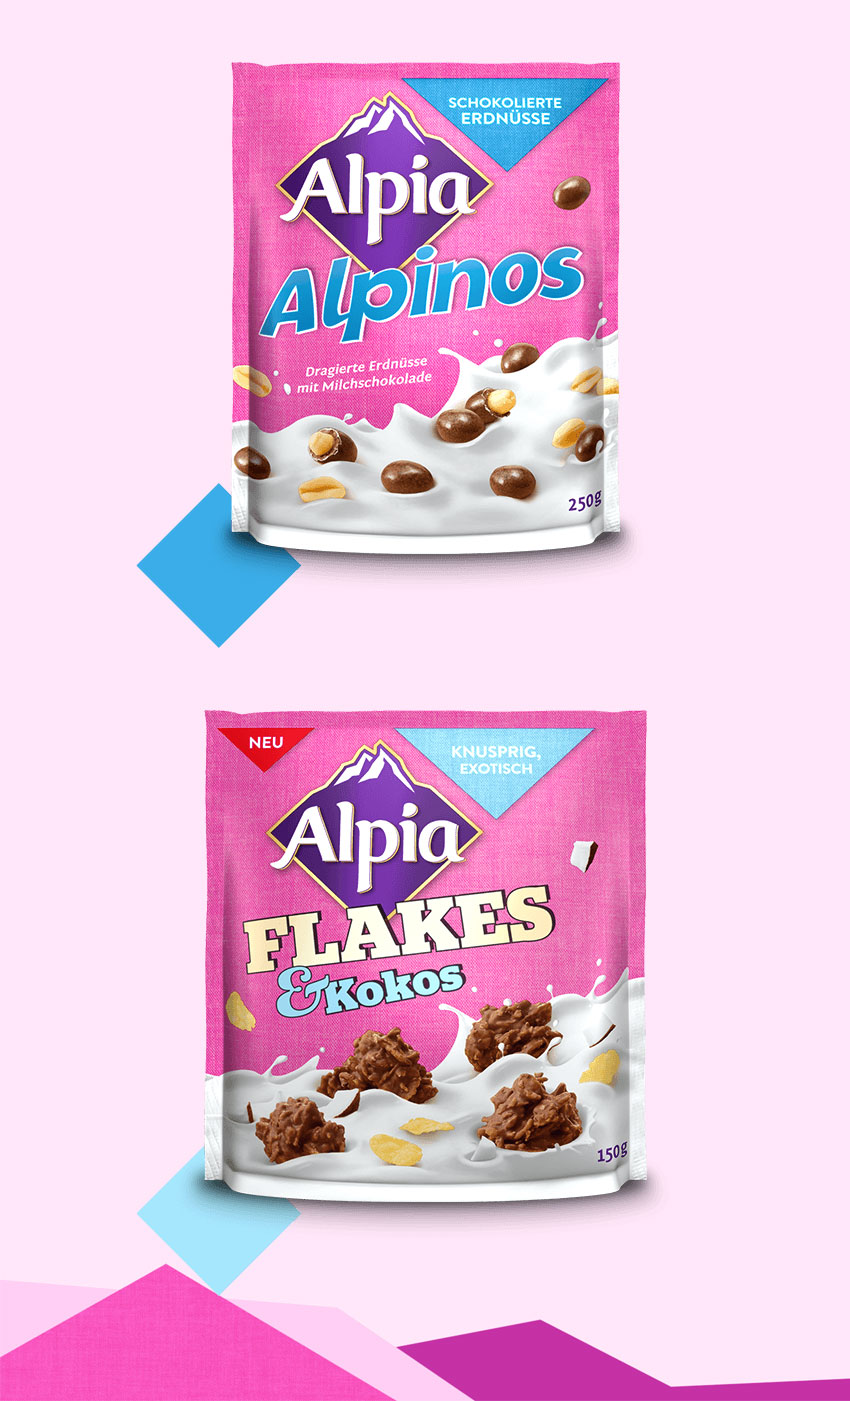 德国巧克力品牌 Alpia（欧派）启用新LOGO